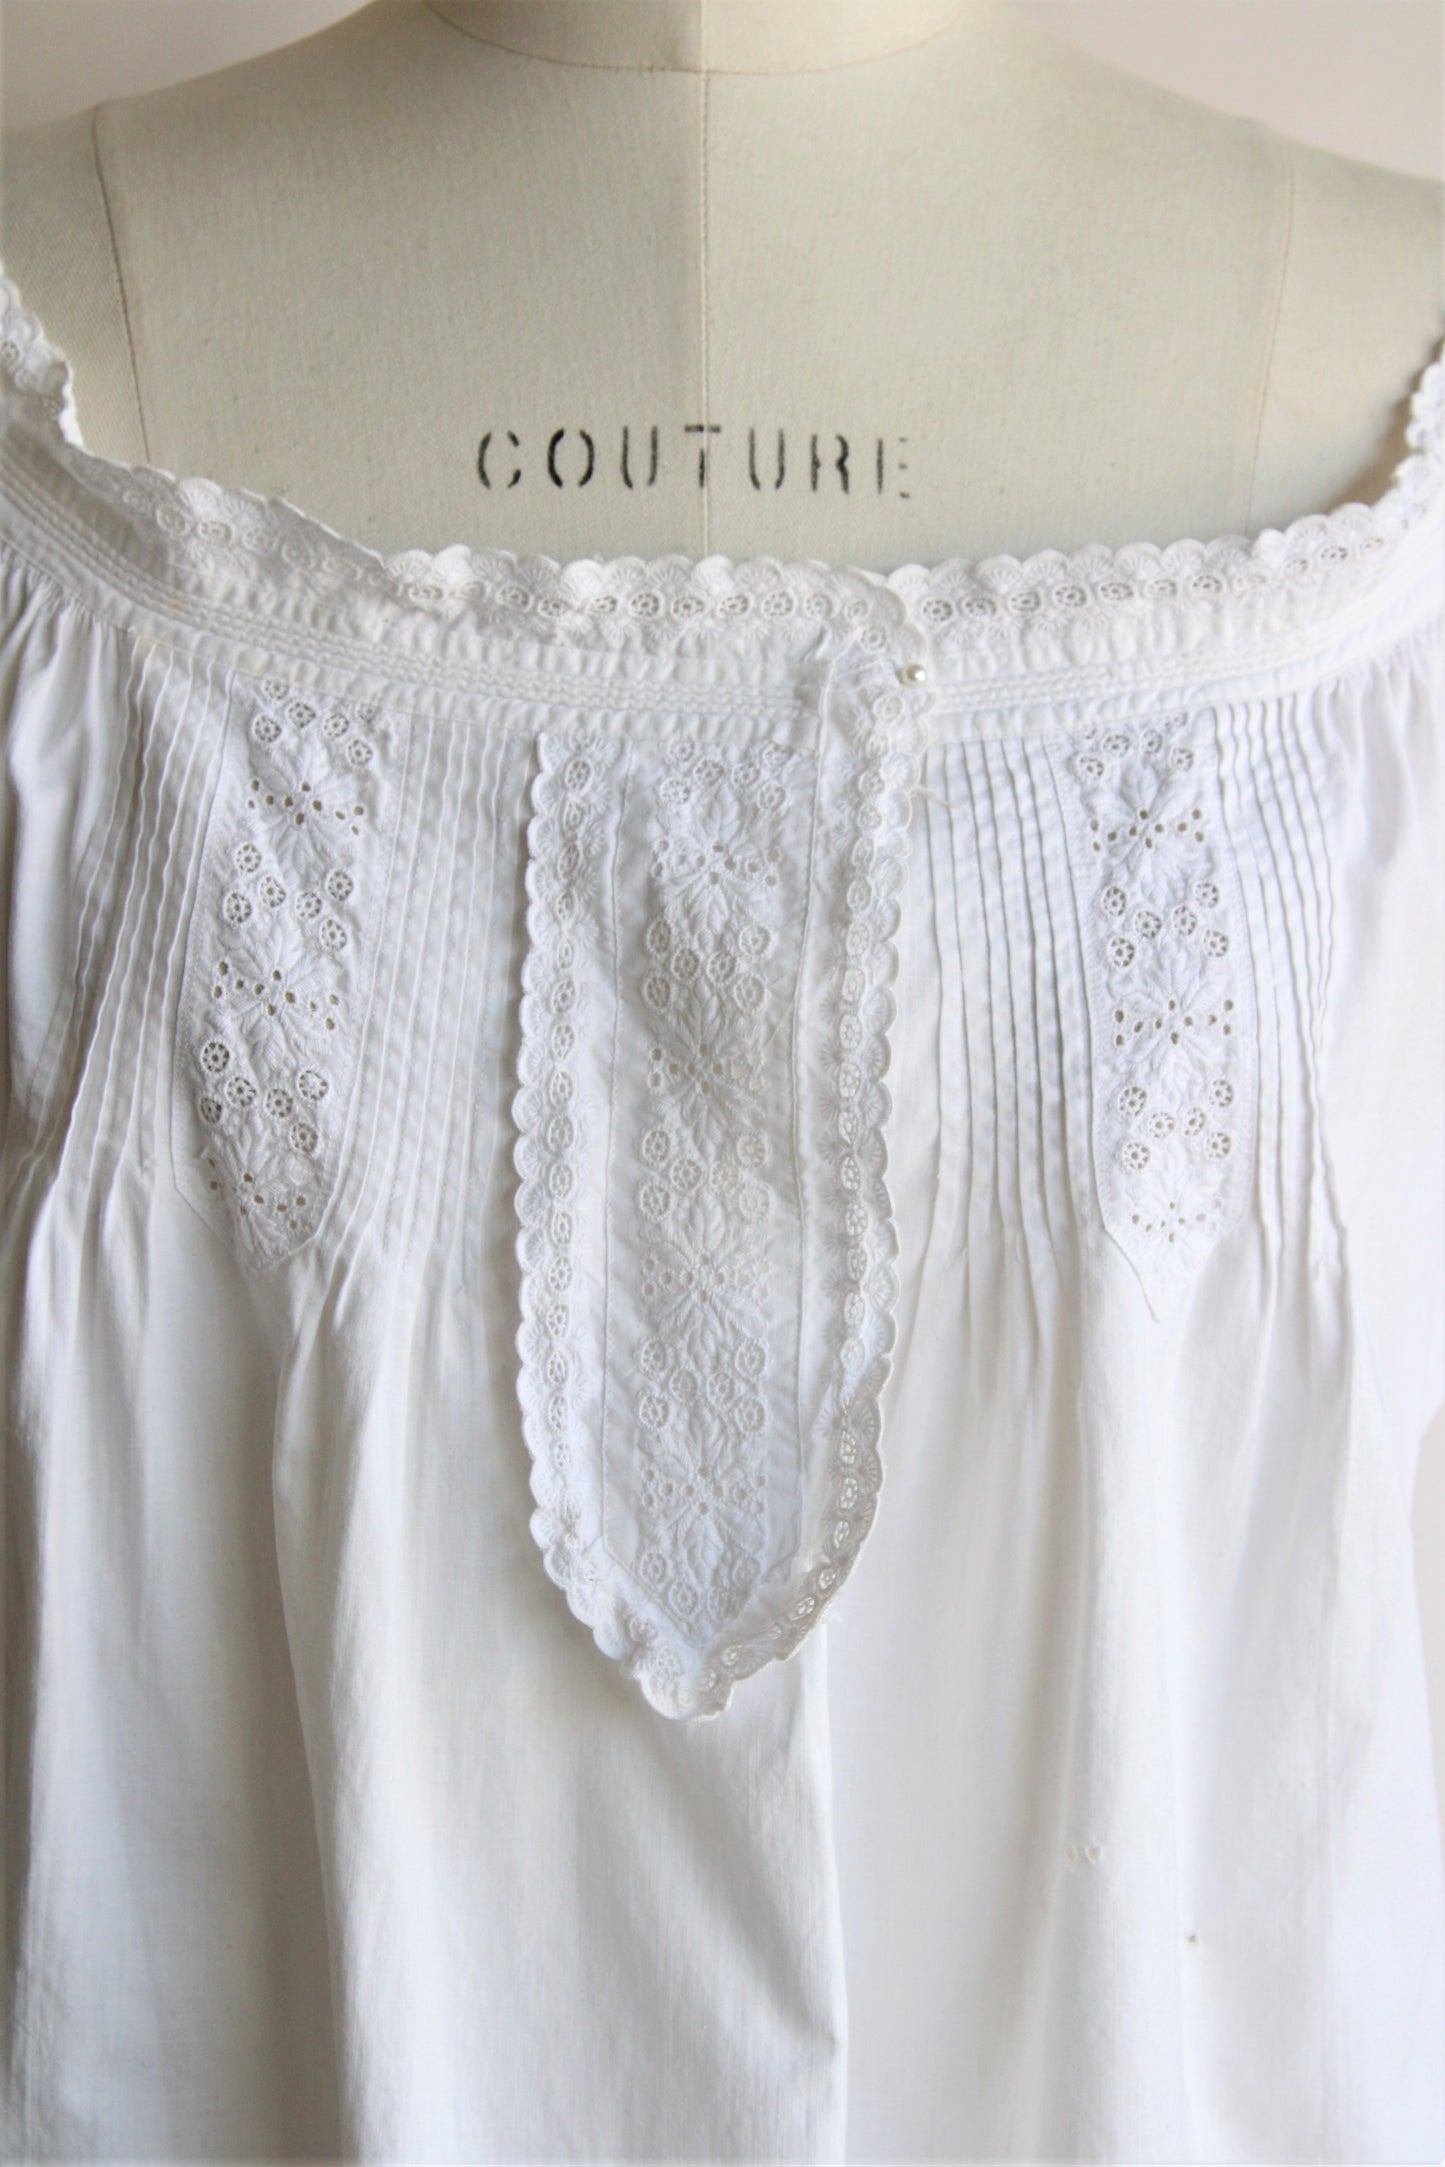 Antique White Cotton Nightgown